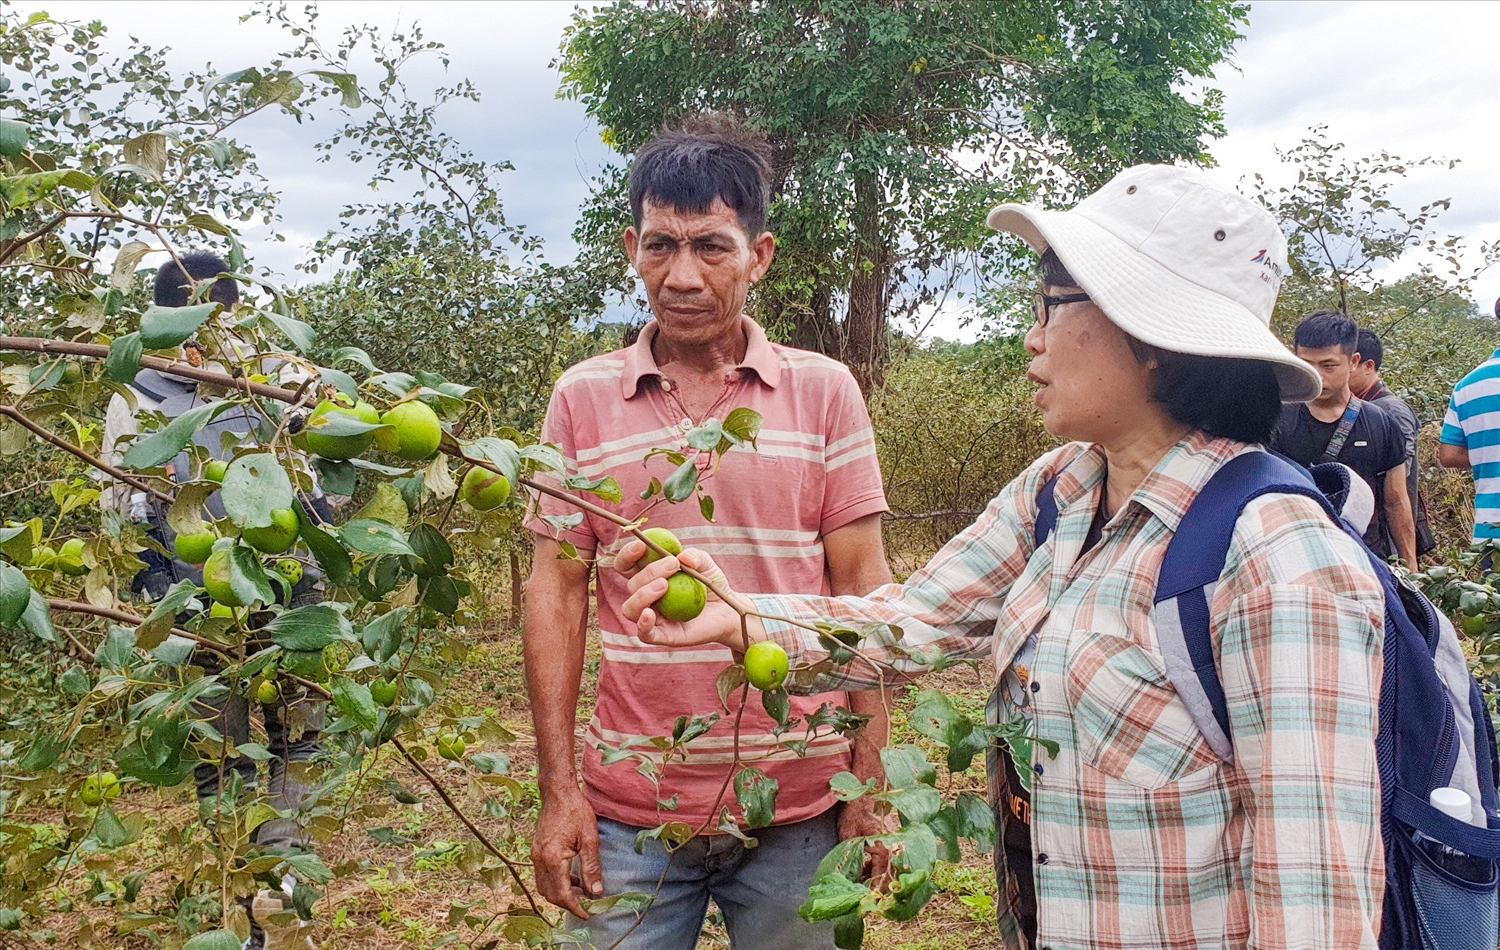 Chị Lý hướng dẫn các hộ dân chăm sóc cây trồng để đem lại hiệu quả kinh tế cao